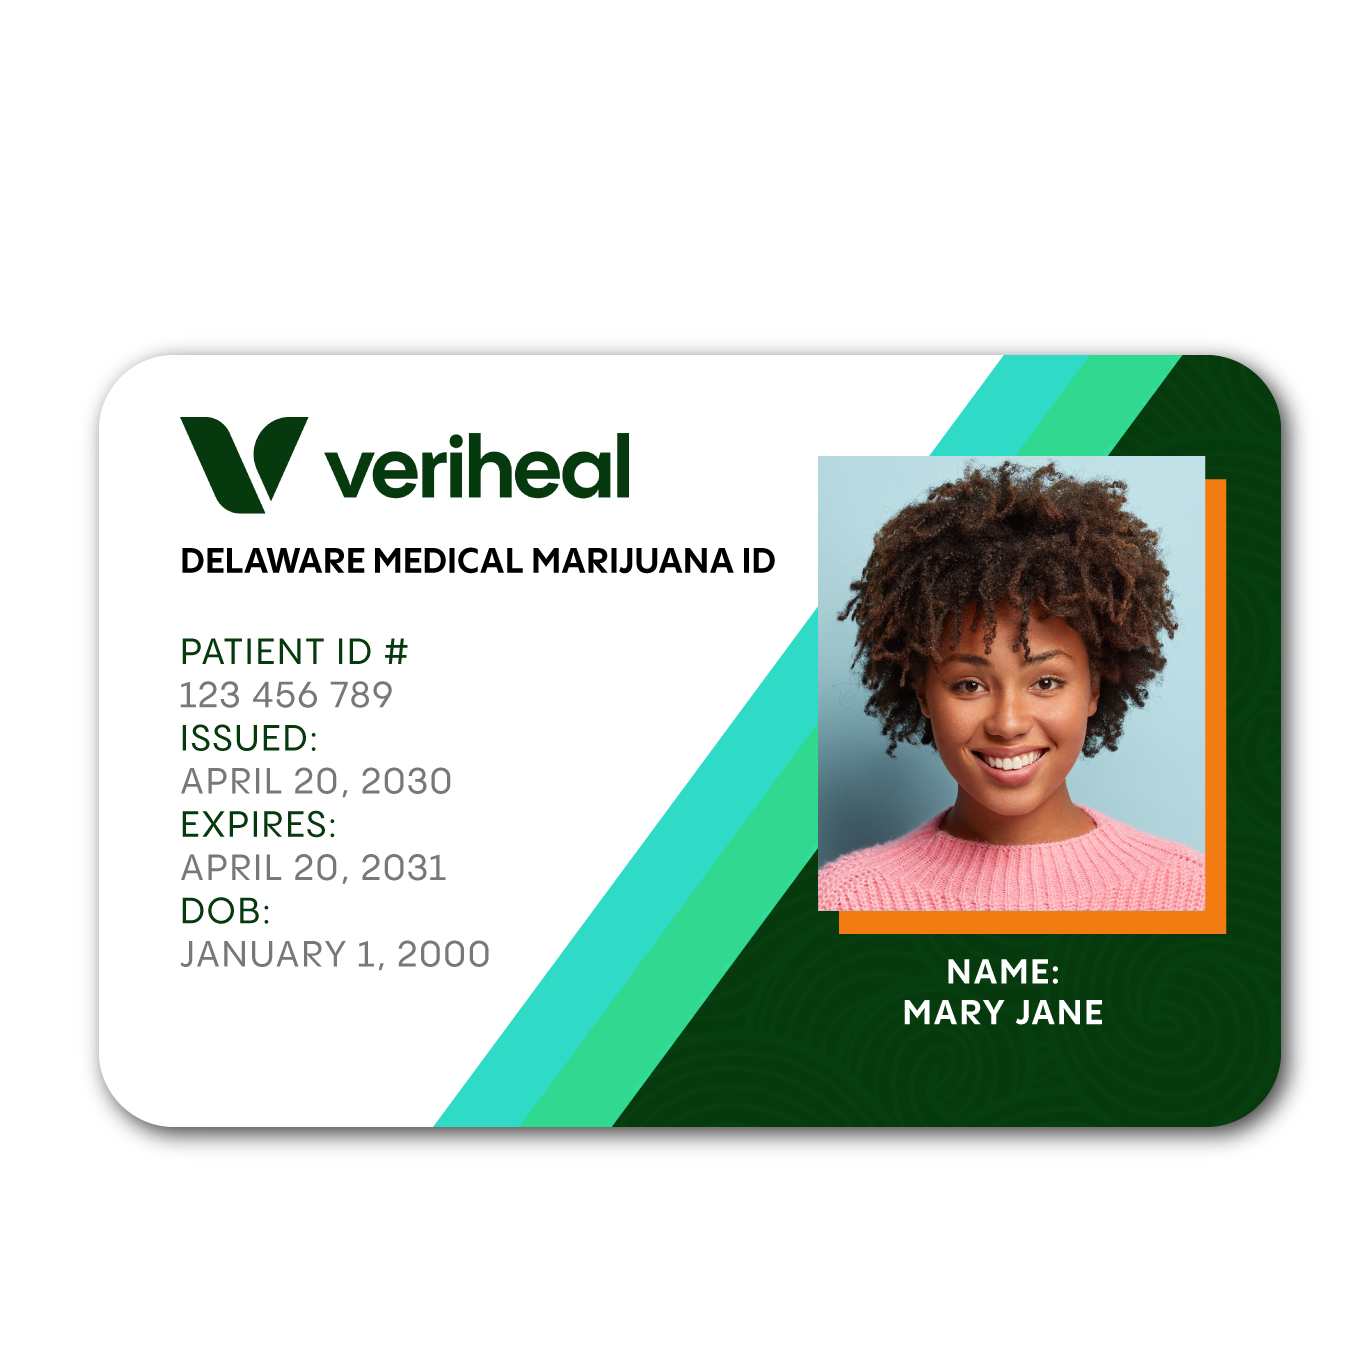 Delaware Medical Marijuana Card by Veriheal